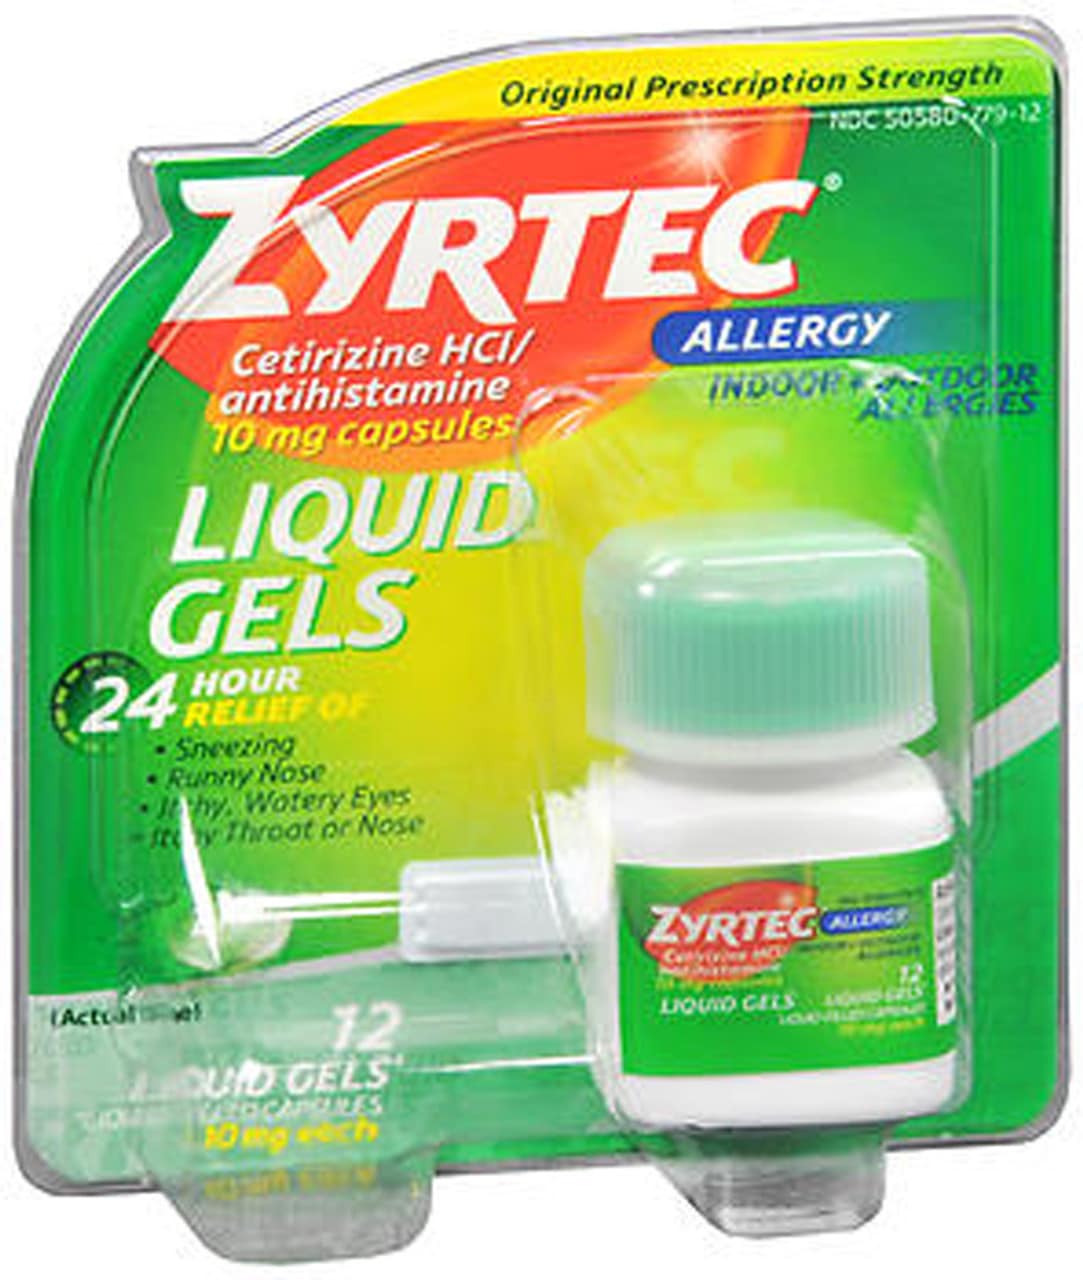 Zyrtec Allergy 10 mg Liquid Gels